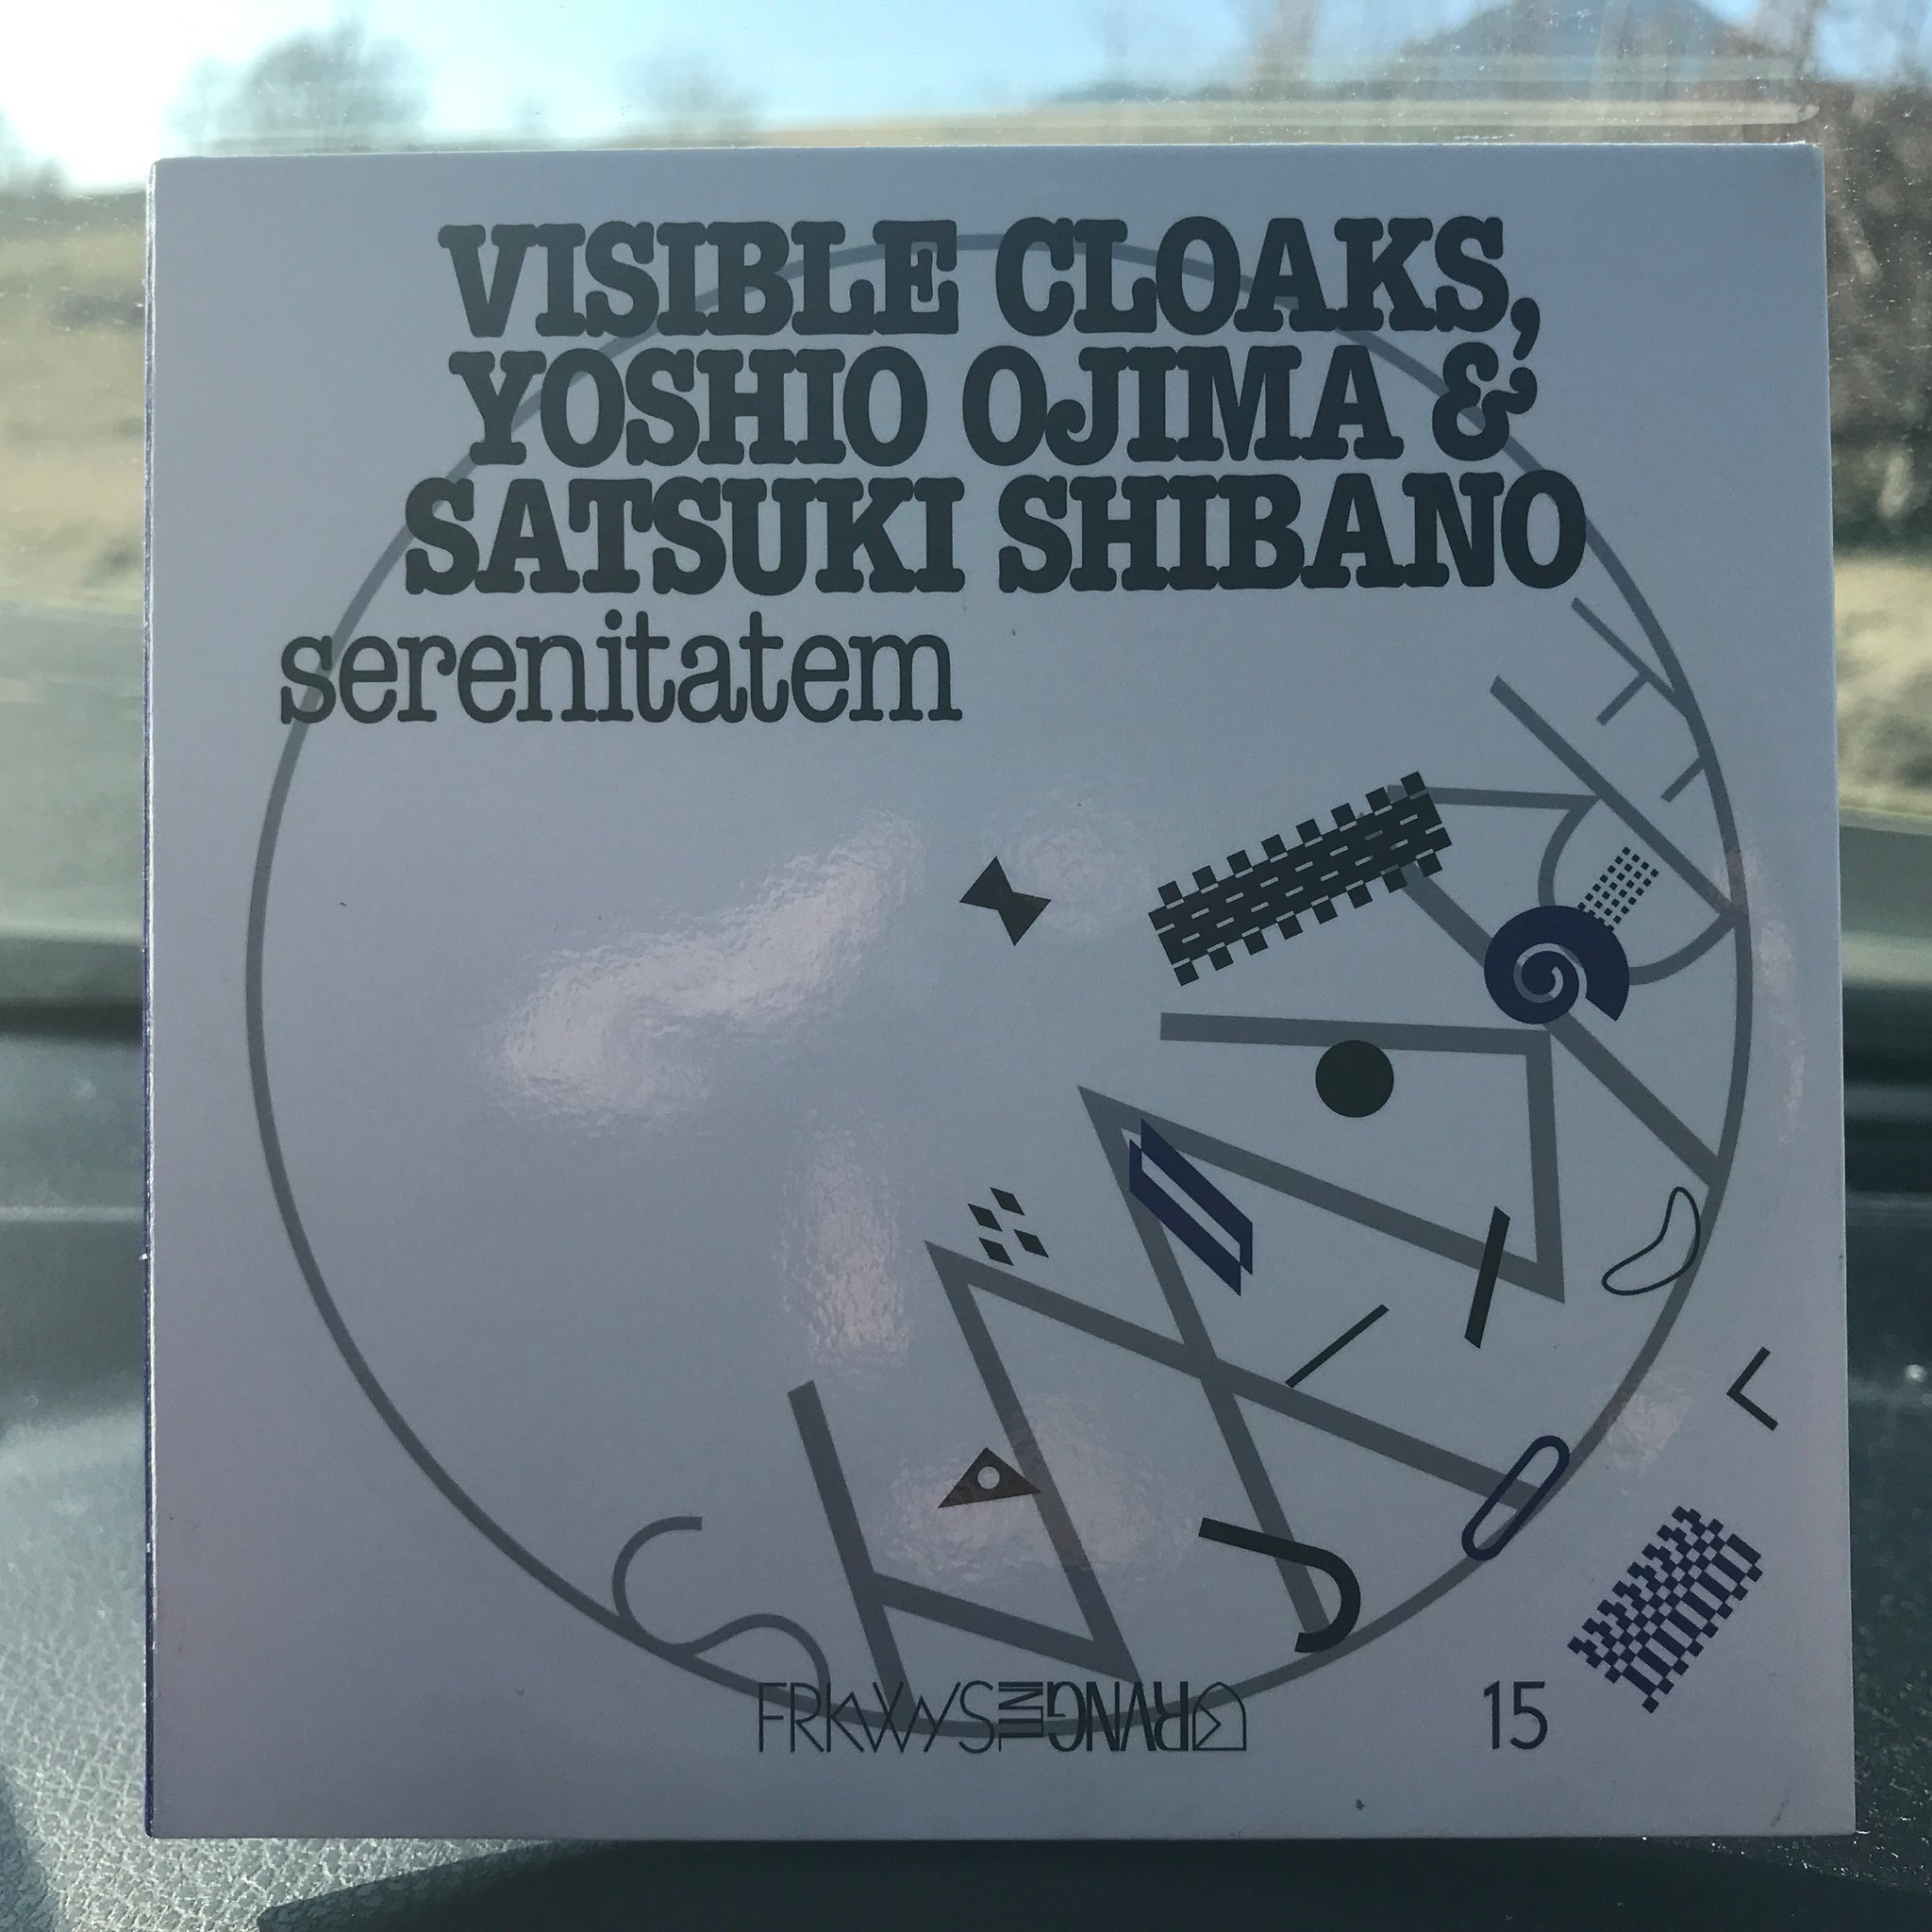 Visible Cloaks, Yoshio Ojima & Satsuki Shibano – Serenitatem – Used CD